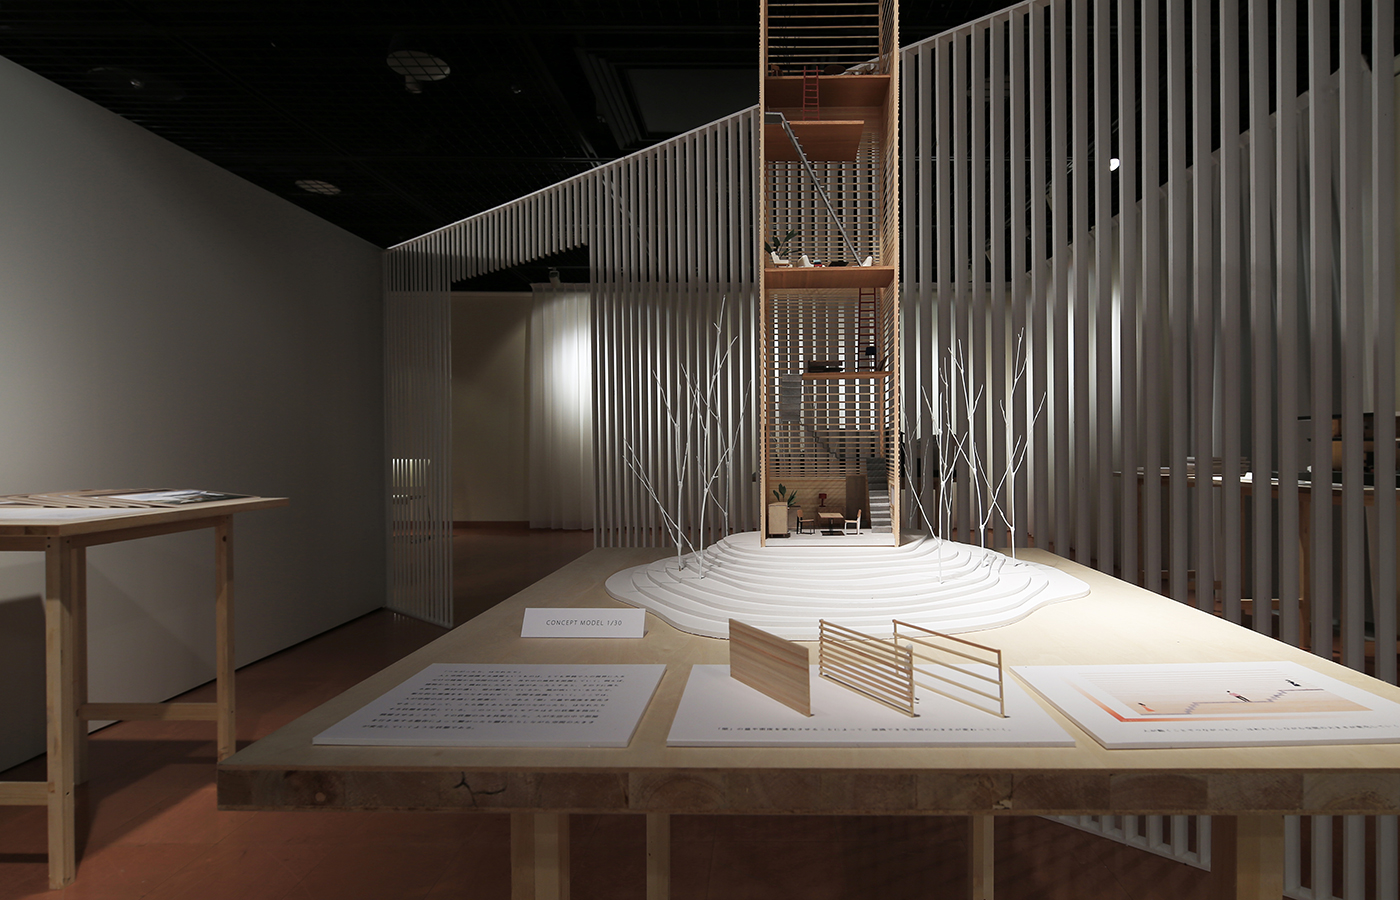 Under 35 Architects exhibition 2014